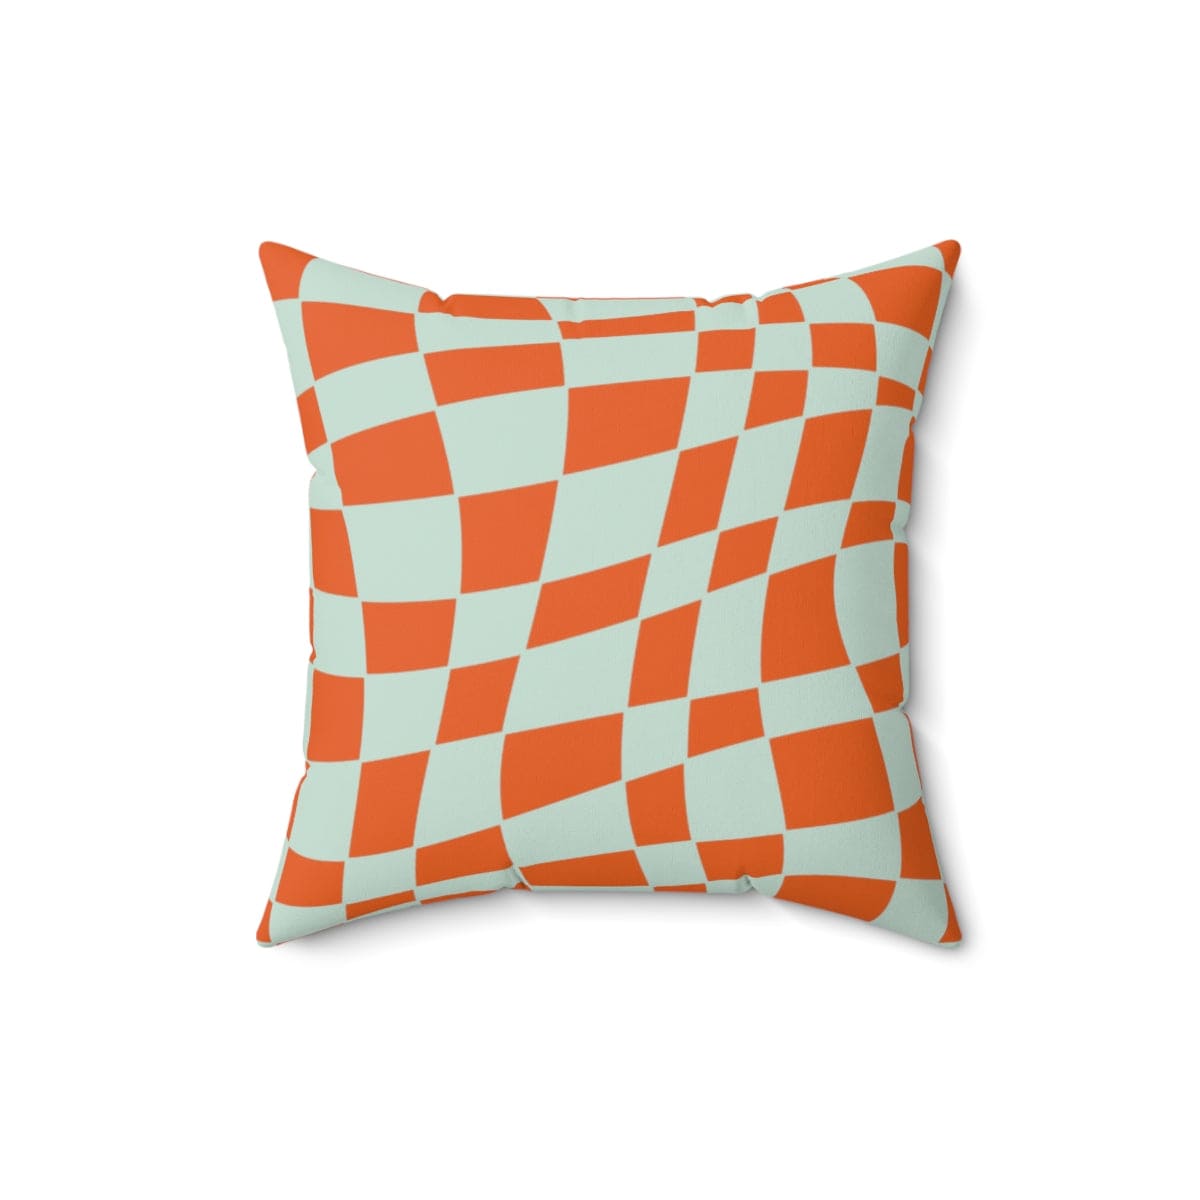 Kate McEnroe New York Retro Checkered Throw Pillow Home Decor 16" × 16" 72889172012754490006